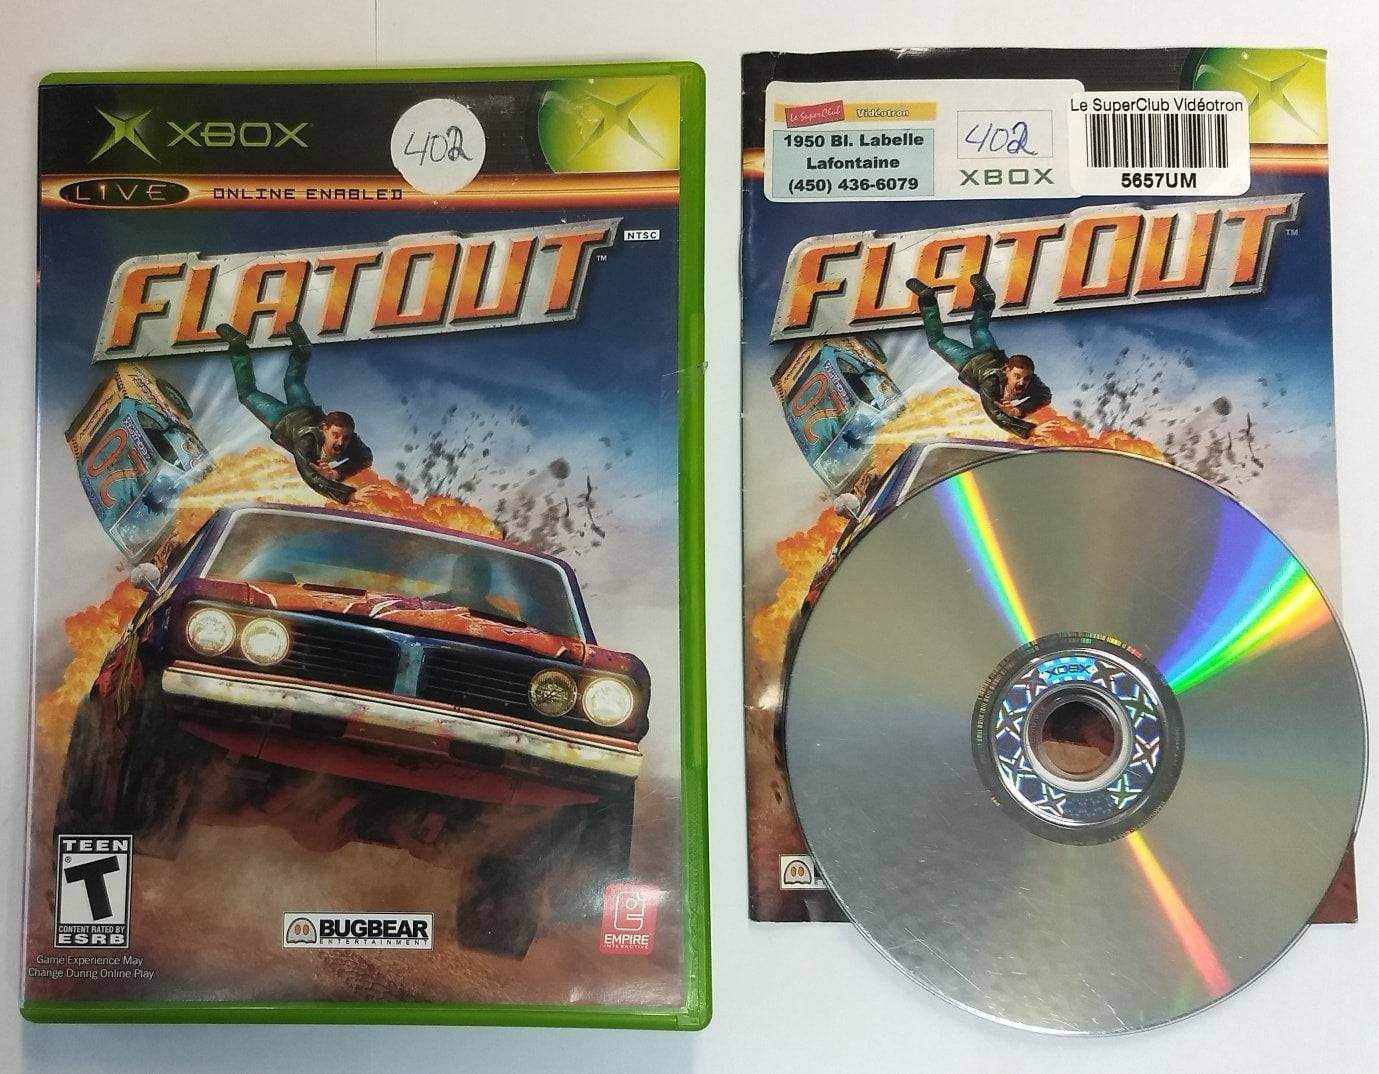 FLATOUT (XBOX) - jeux video game-x